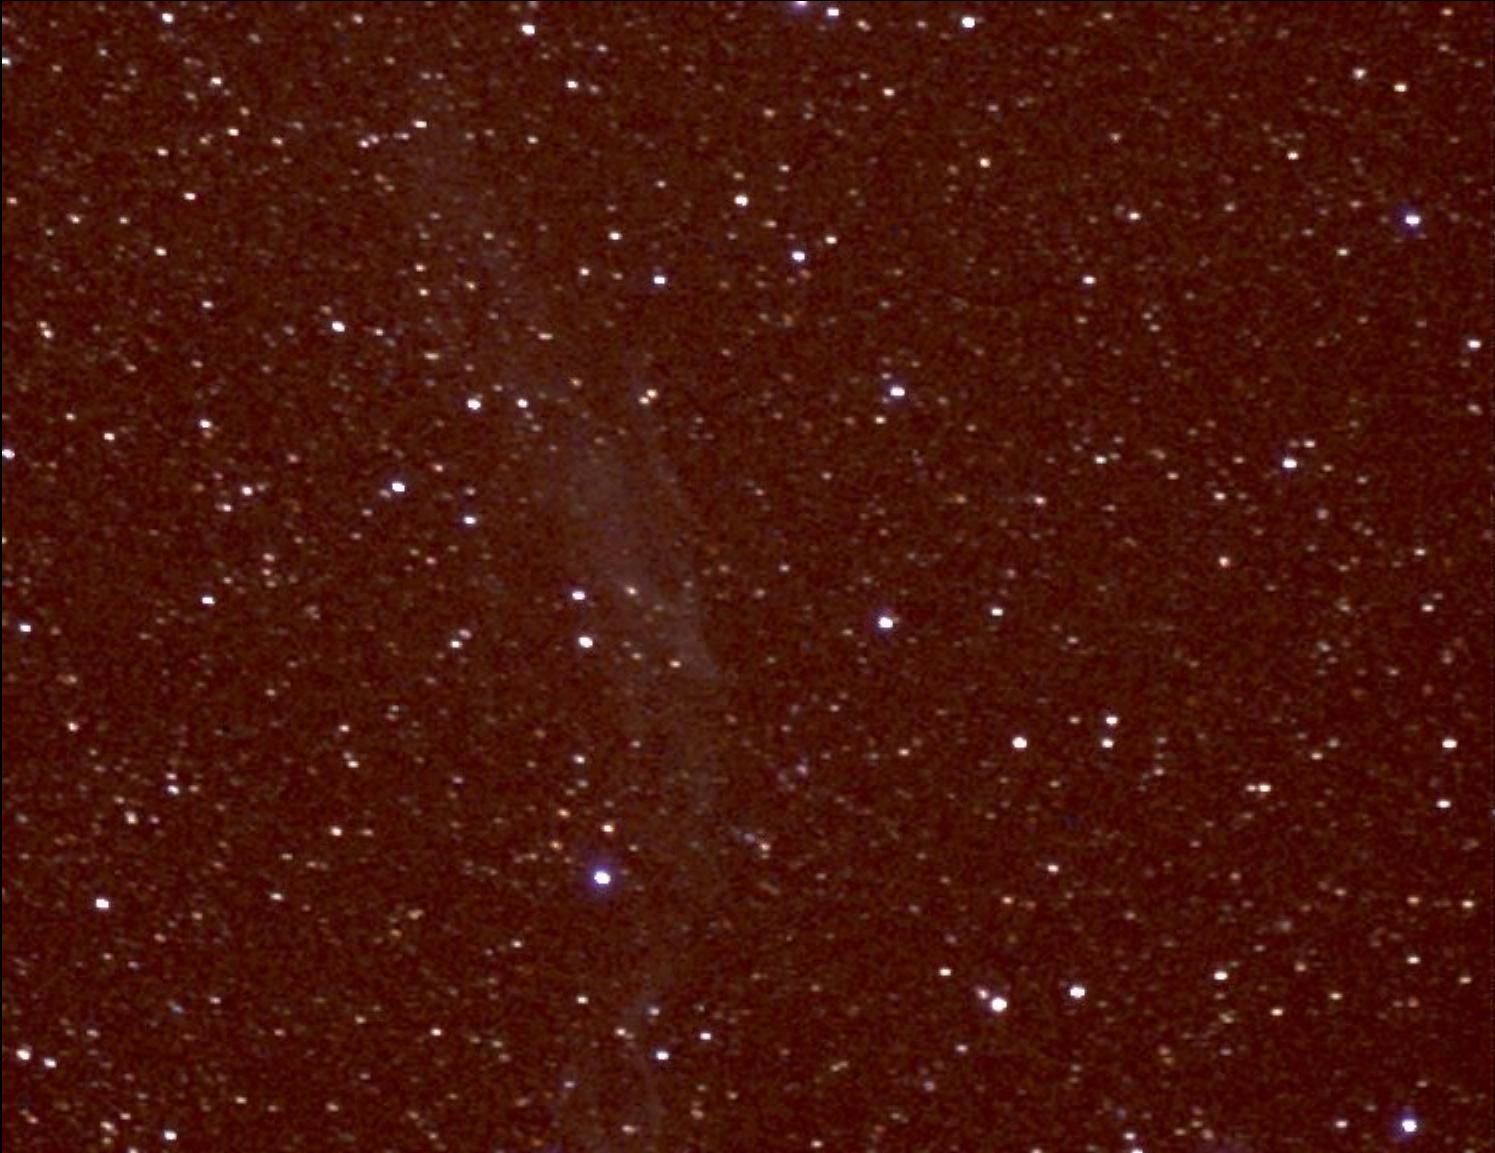 Veil Nebula 9-8-13